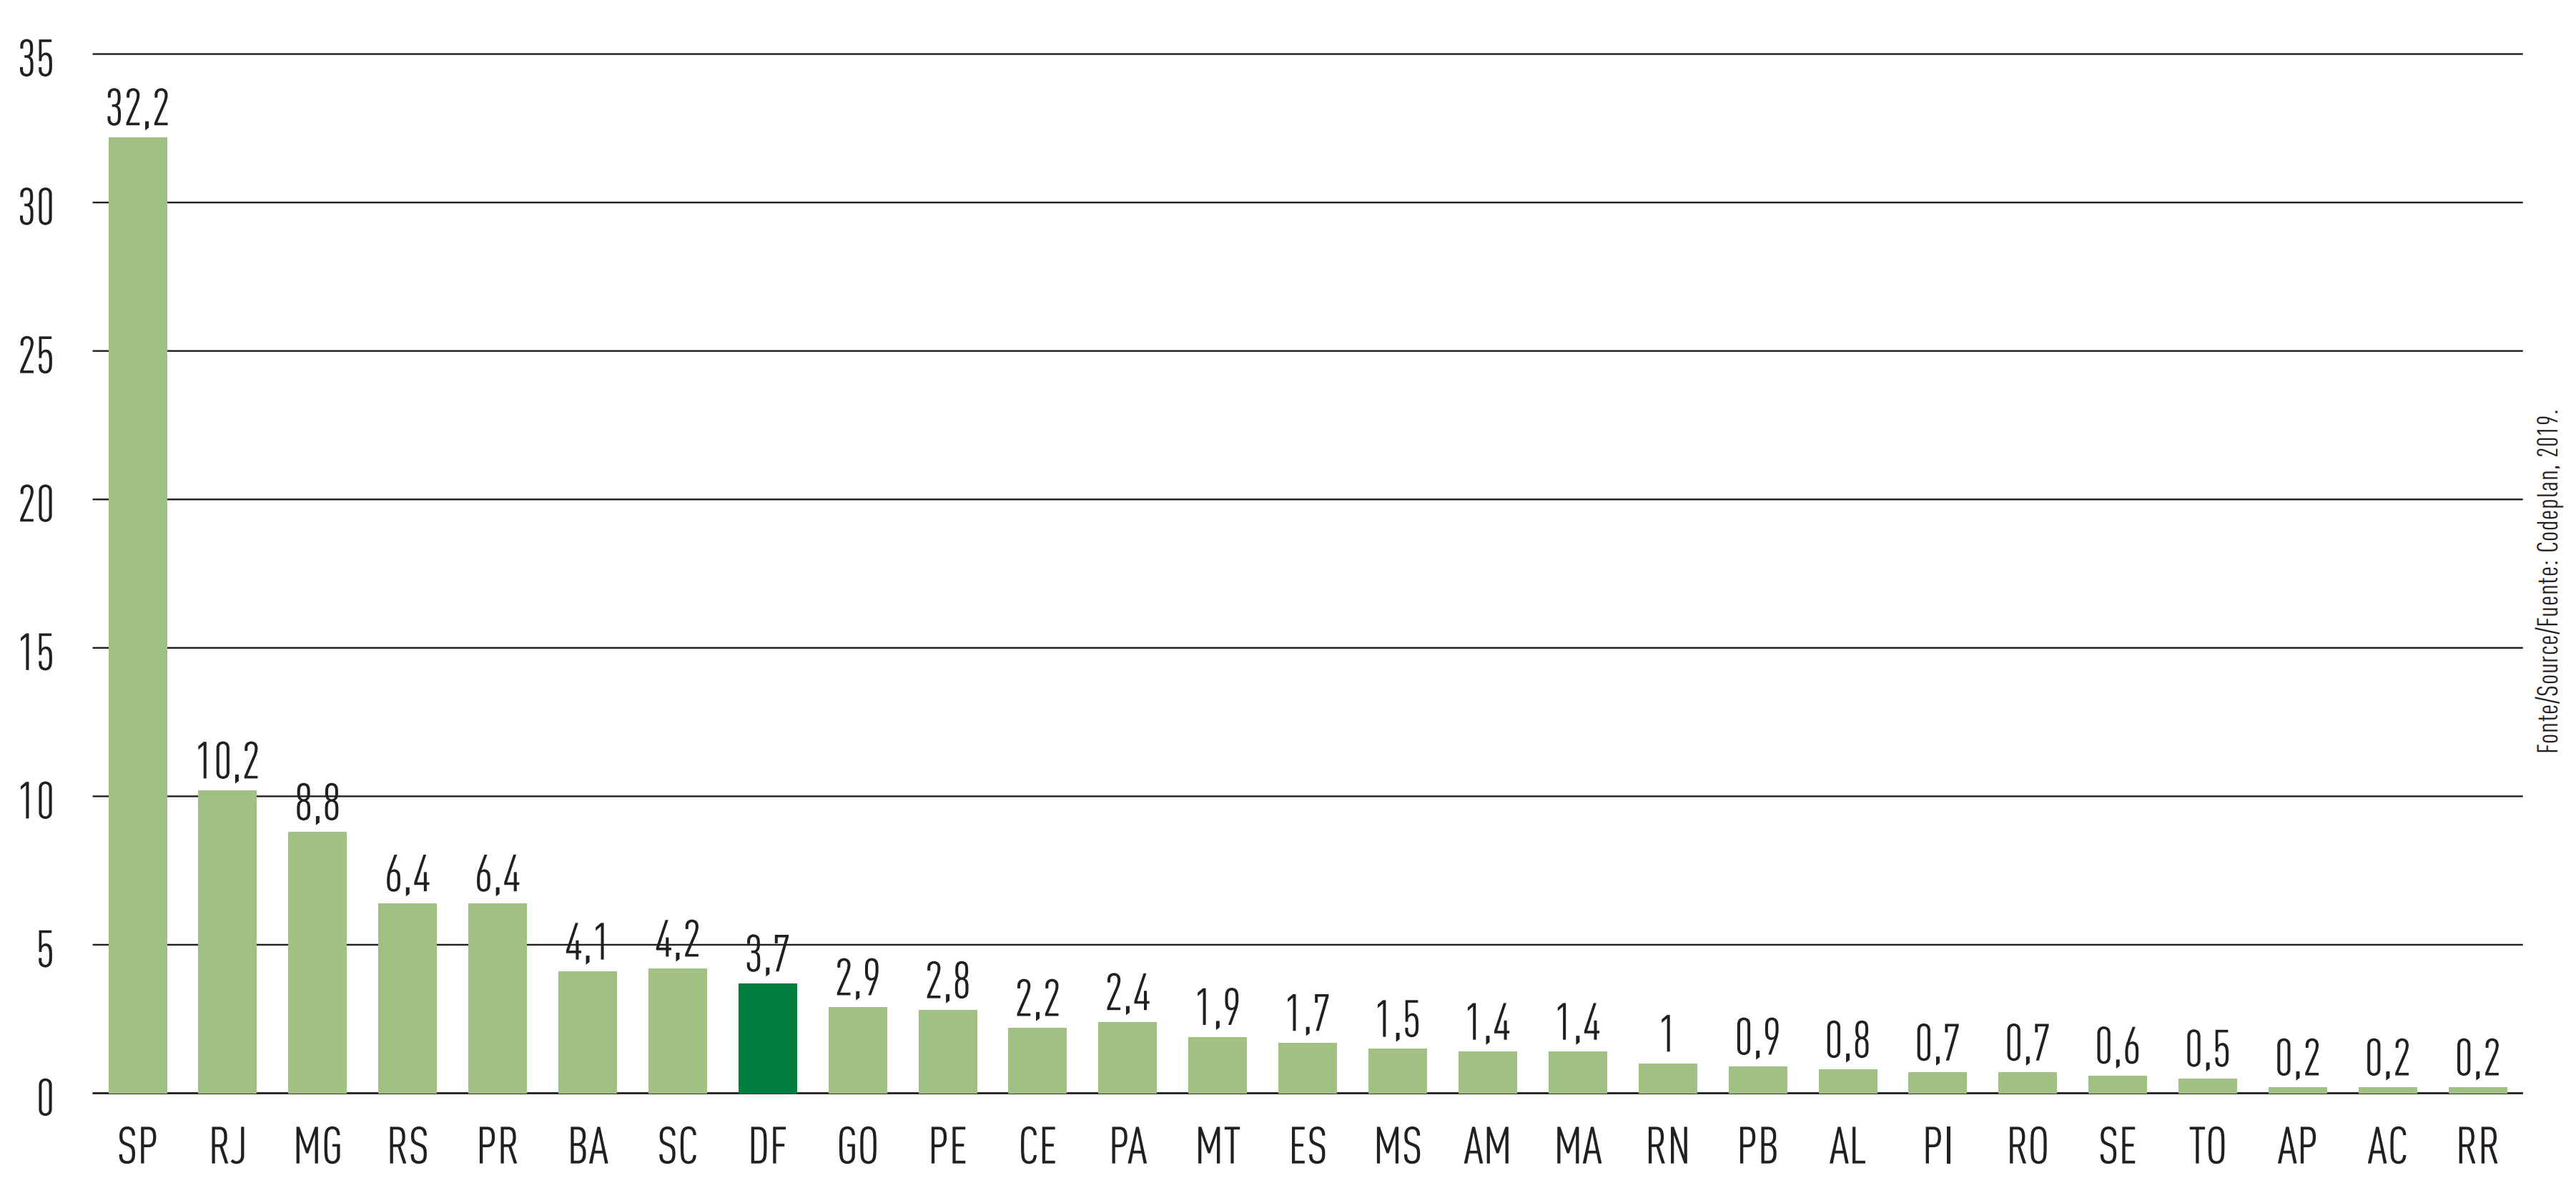  Figura 41 - Ranking da participação das unidades da Federação no PIB (%) do Brasil (2017)